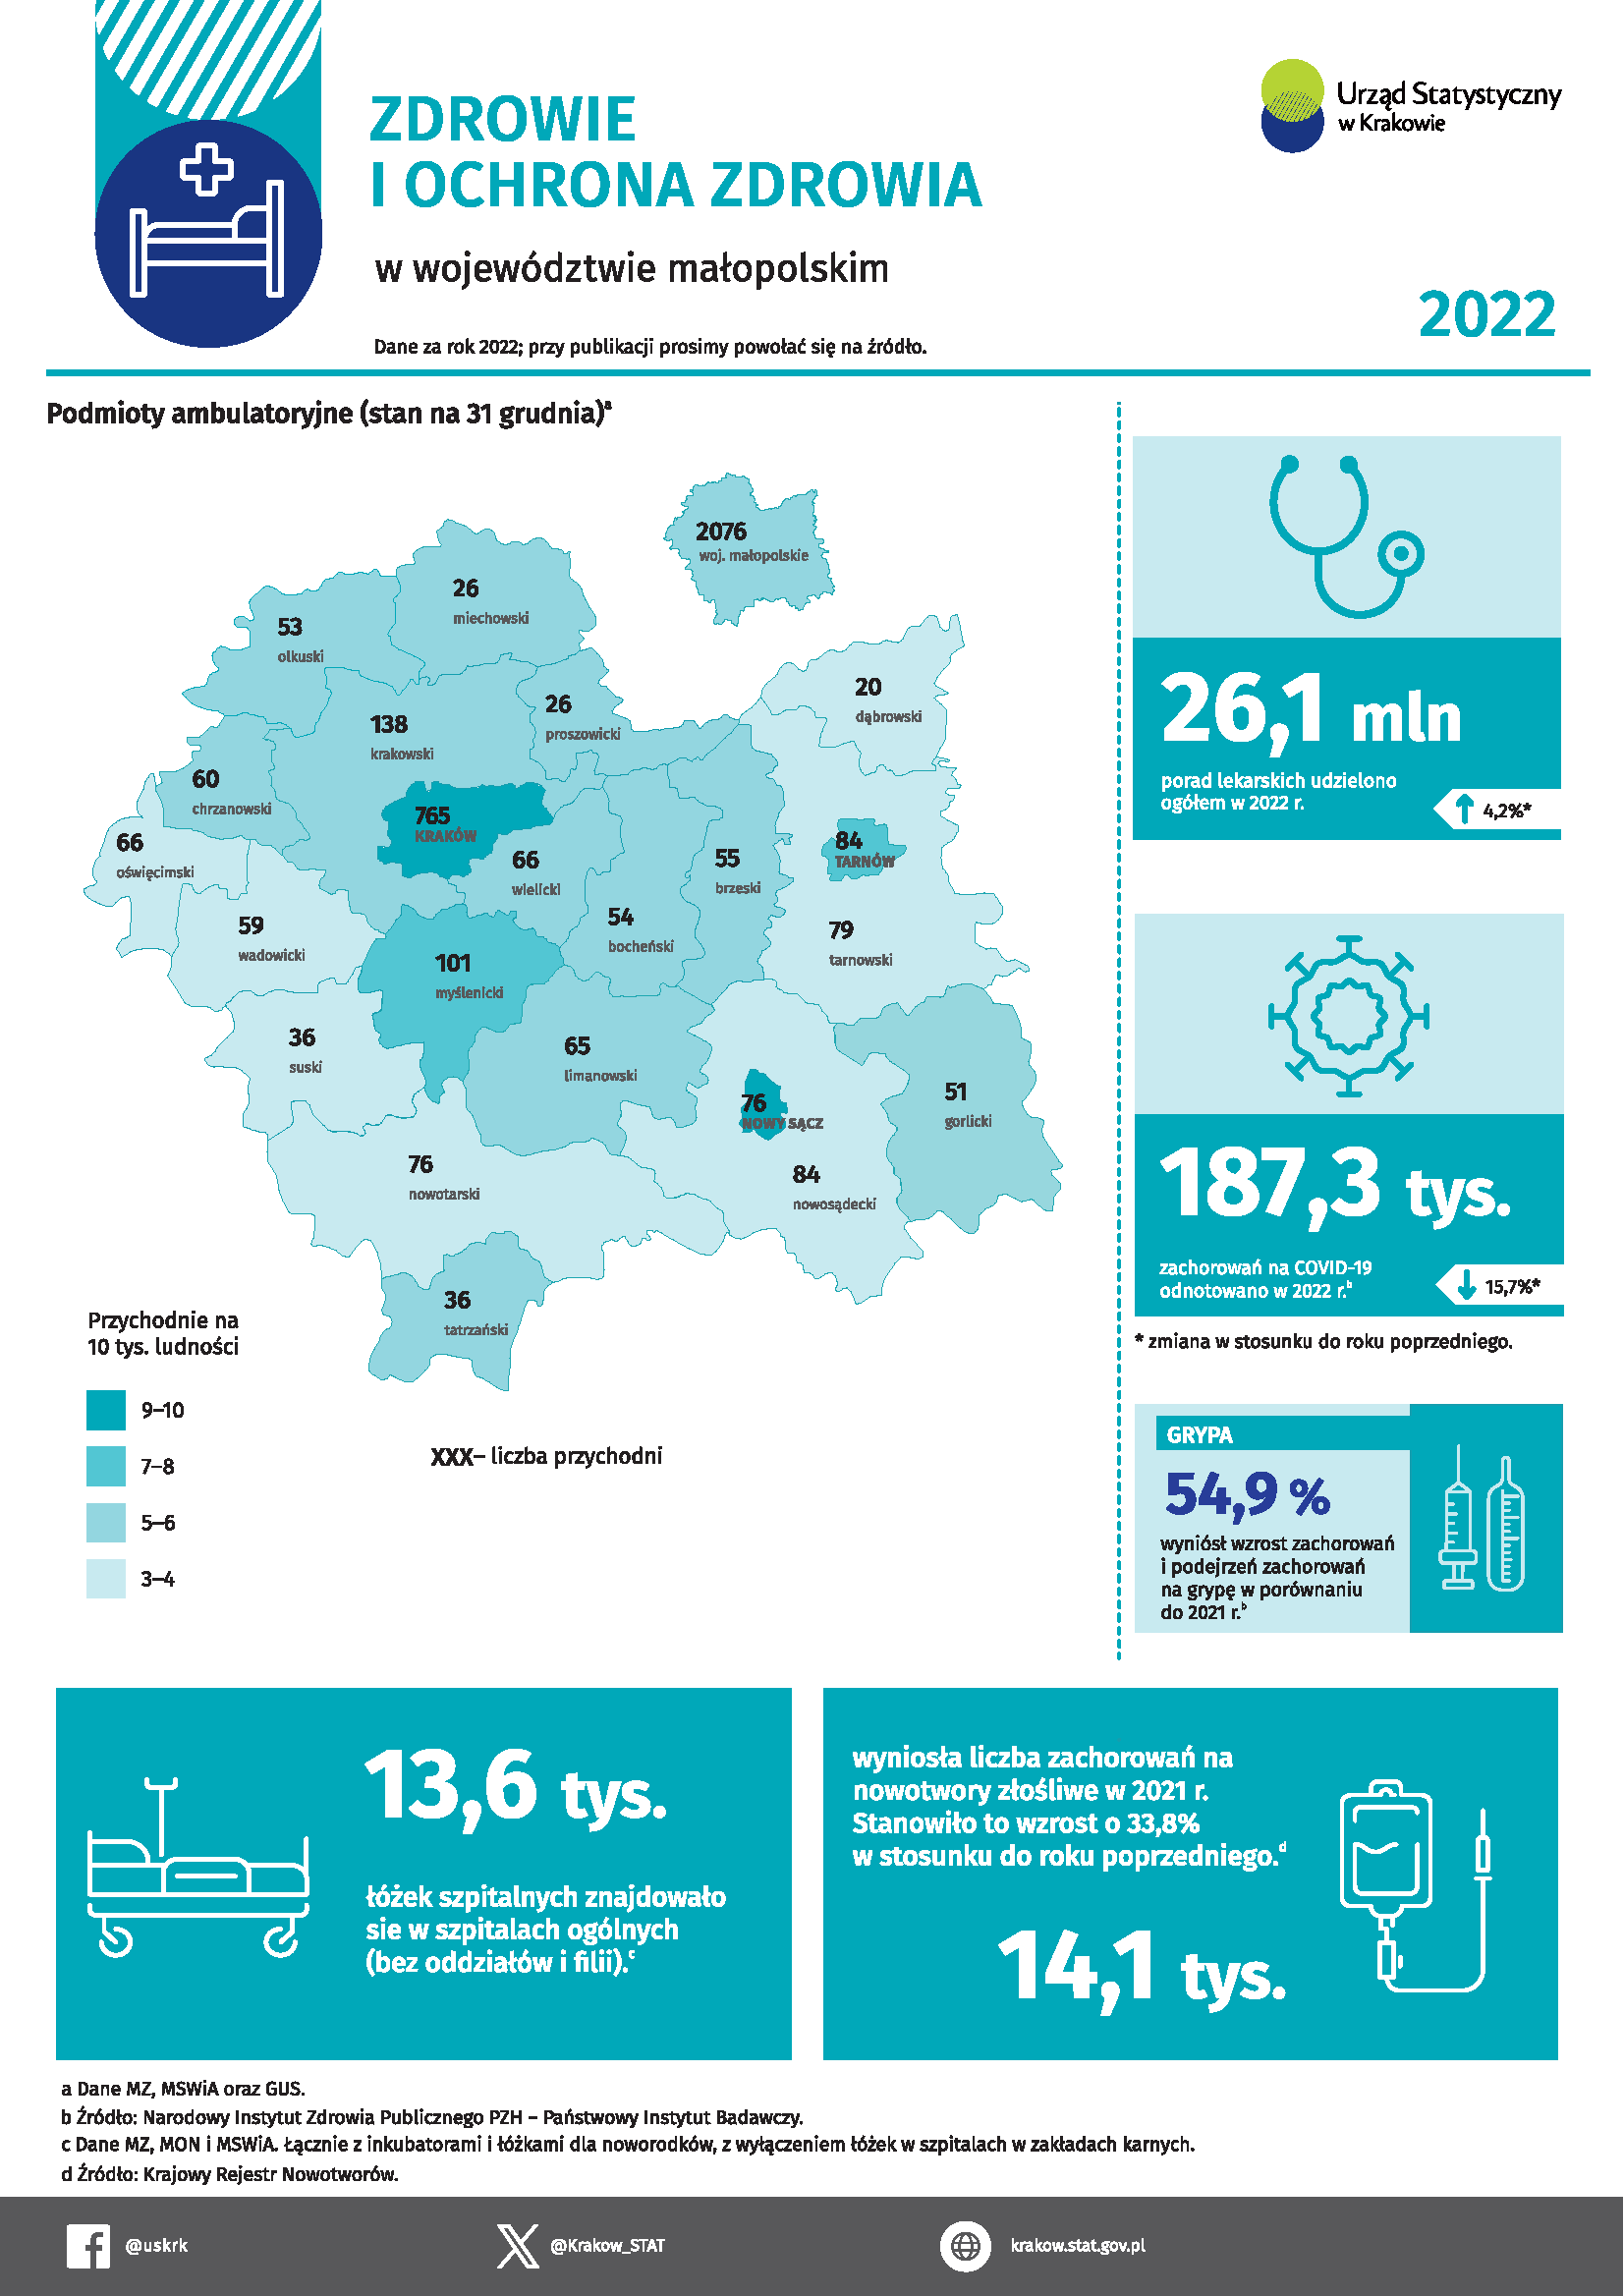 Zdrowie i ochrona zdrowia w województwie małopolskim – infografika